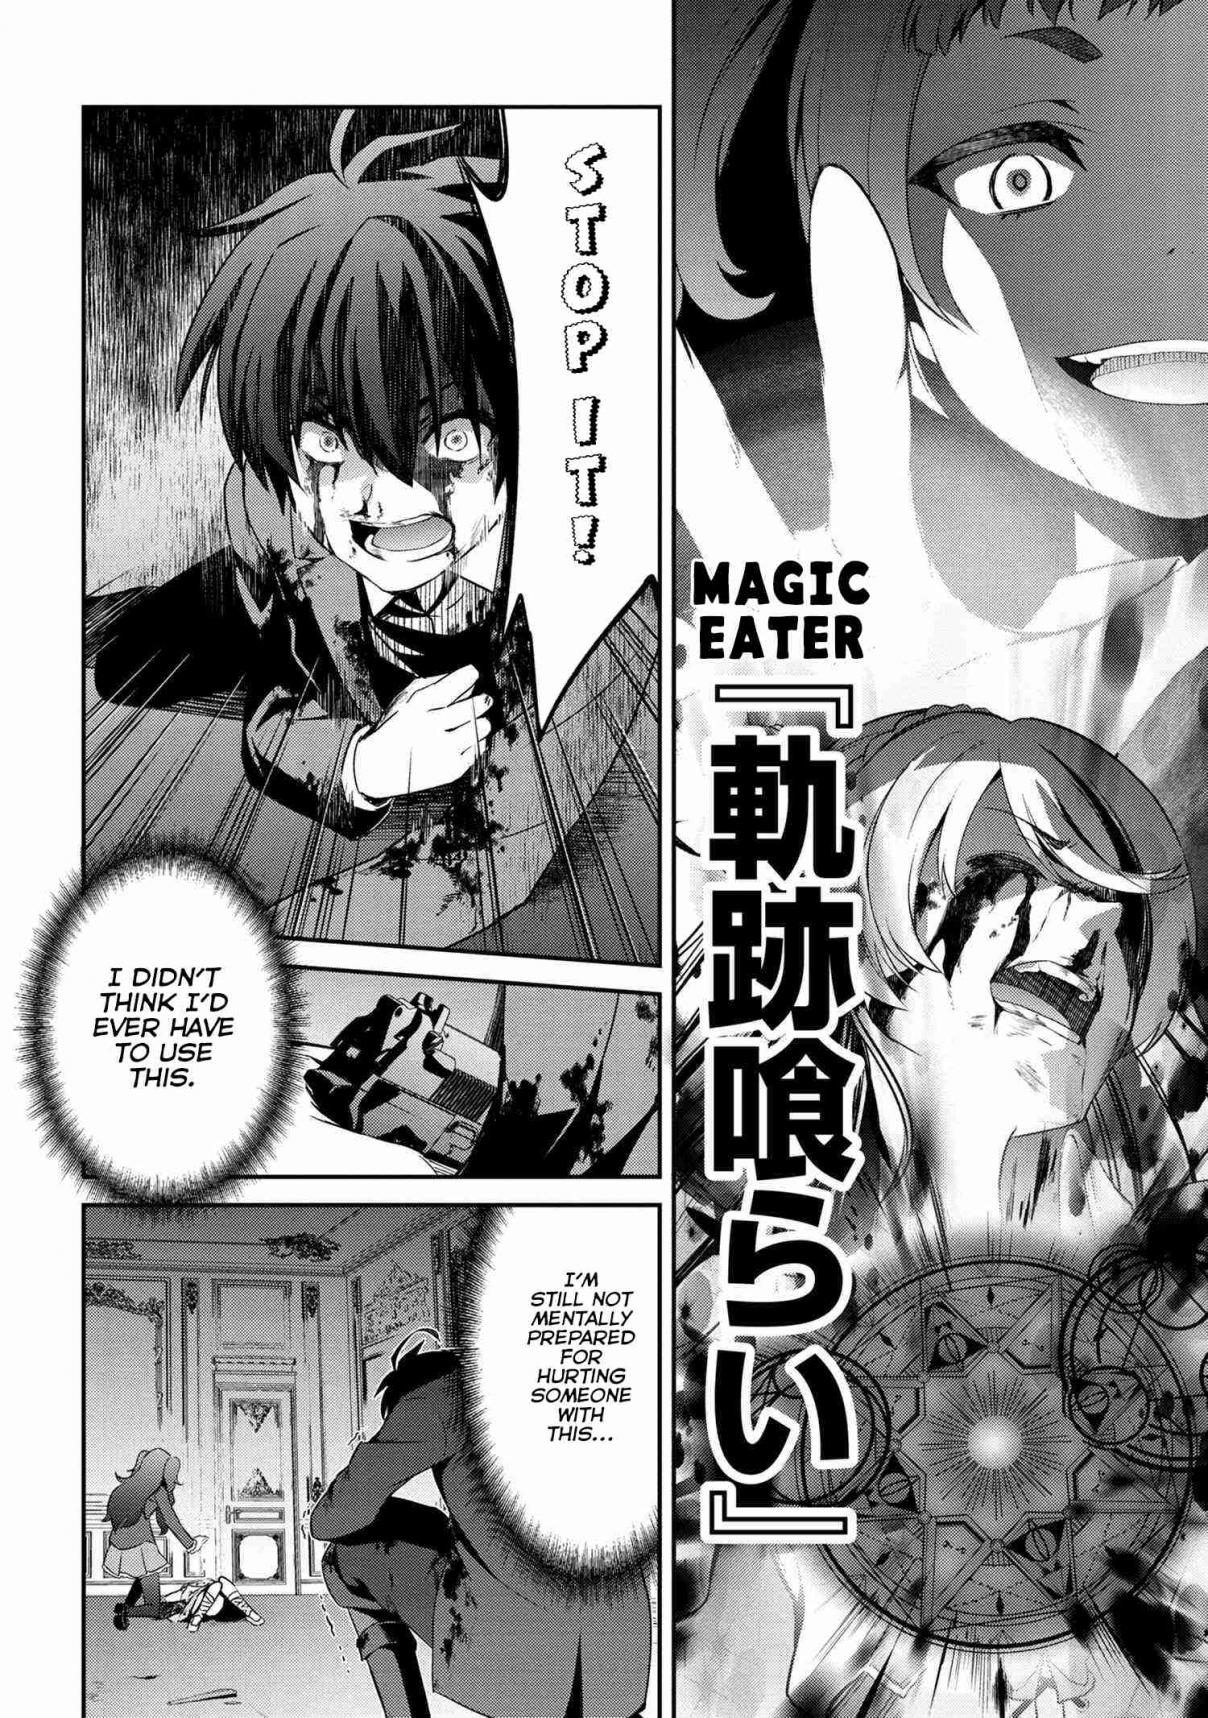 Kimi wa Shinenai Hai Kaburi no Majo Vol. 1 Ch. 3 Magic Eater